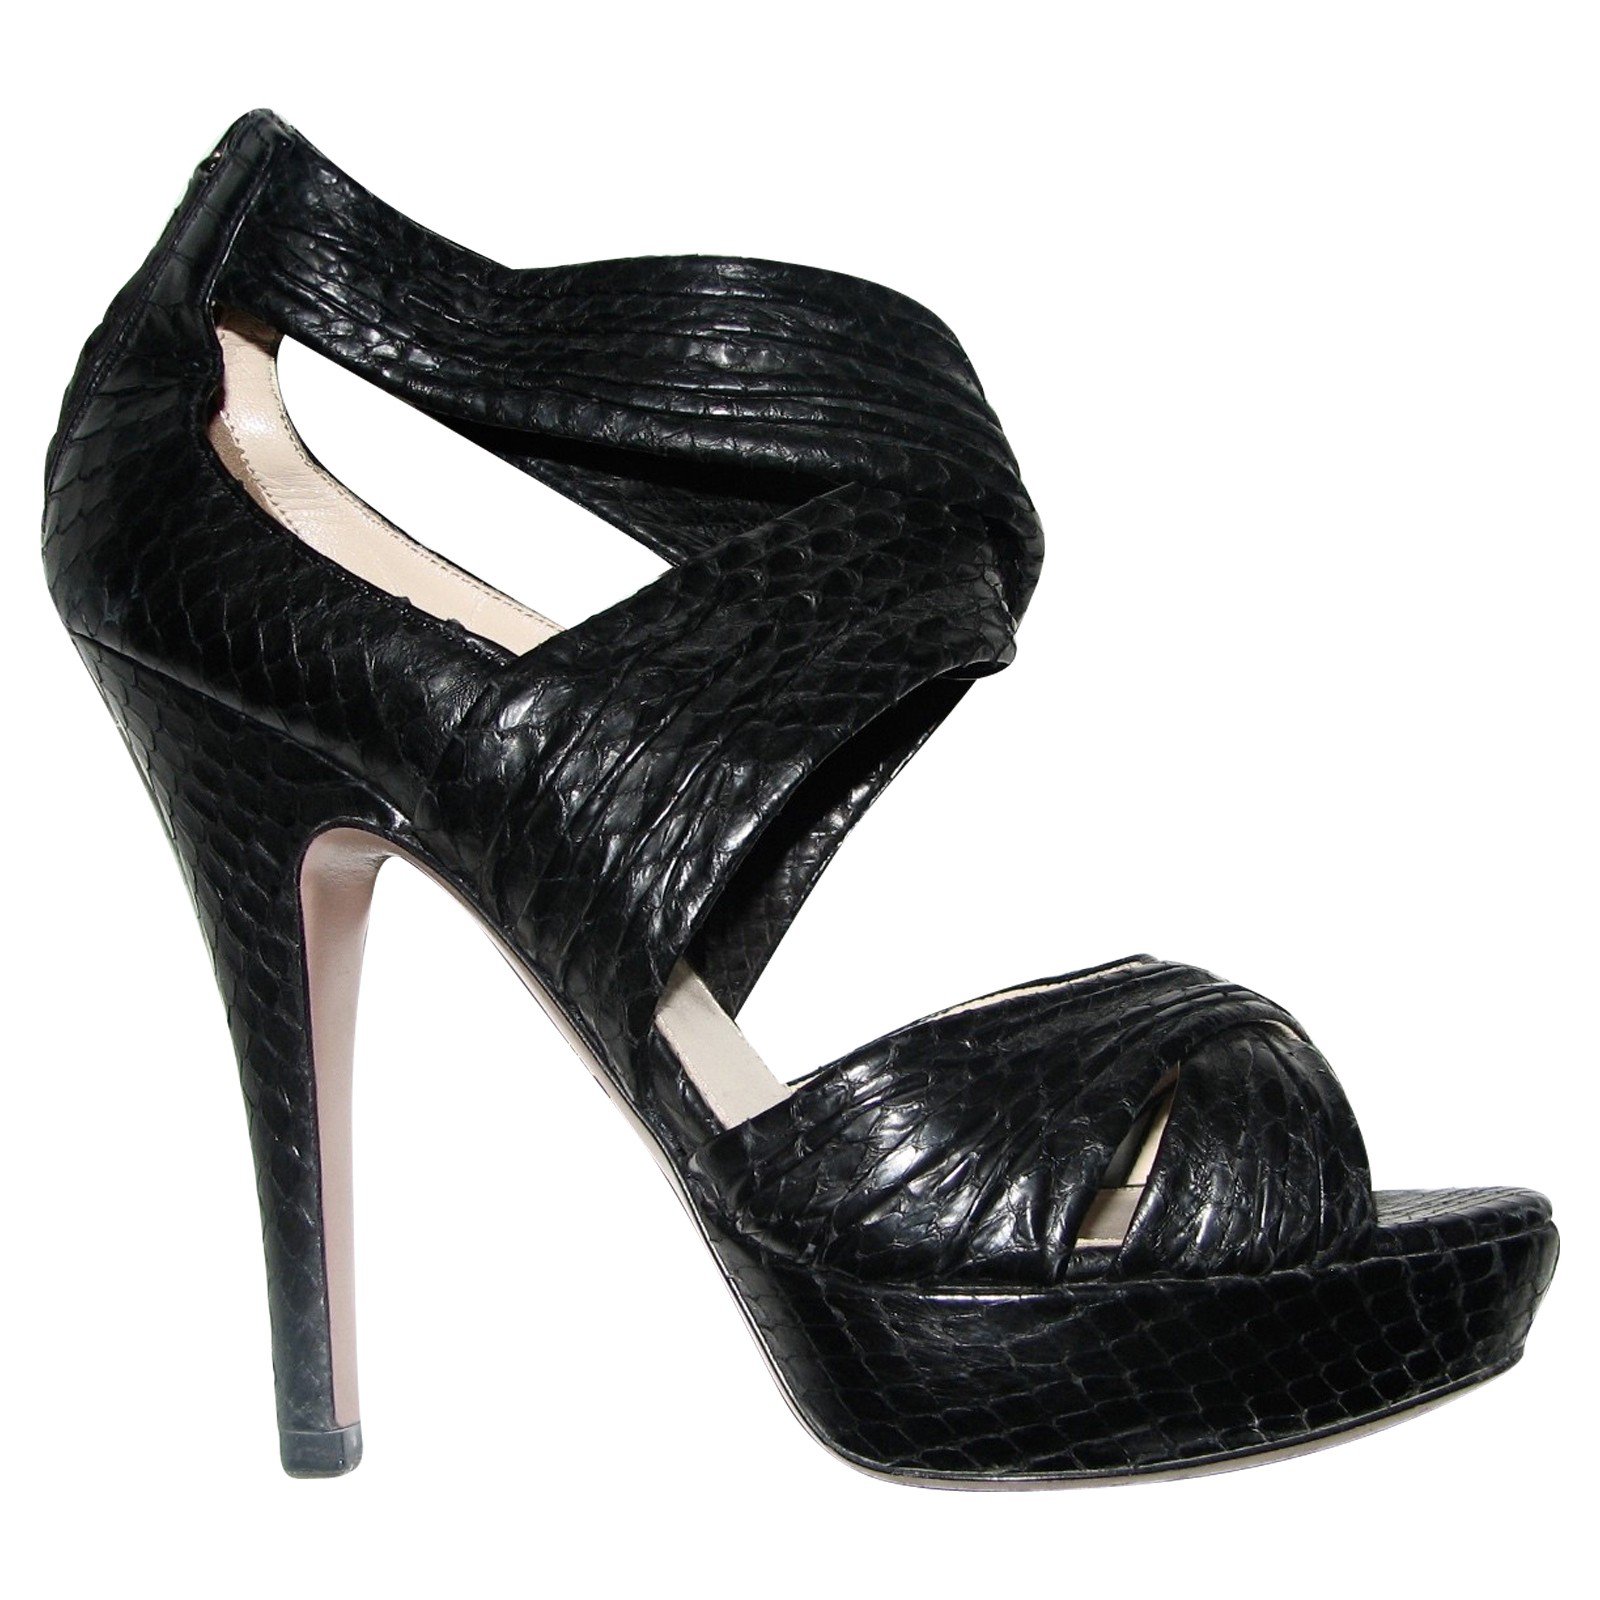 prada black high heels